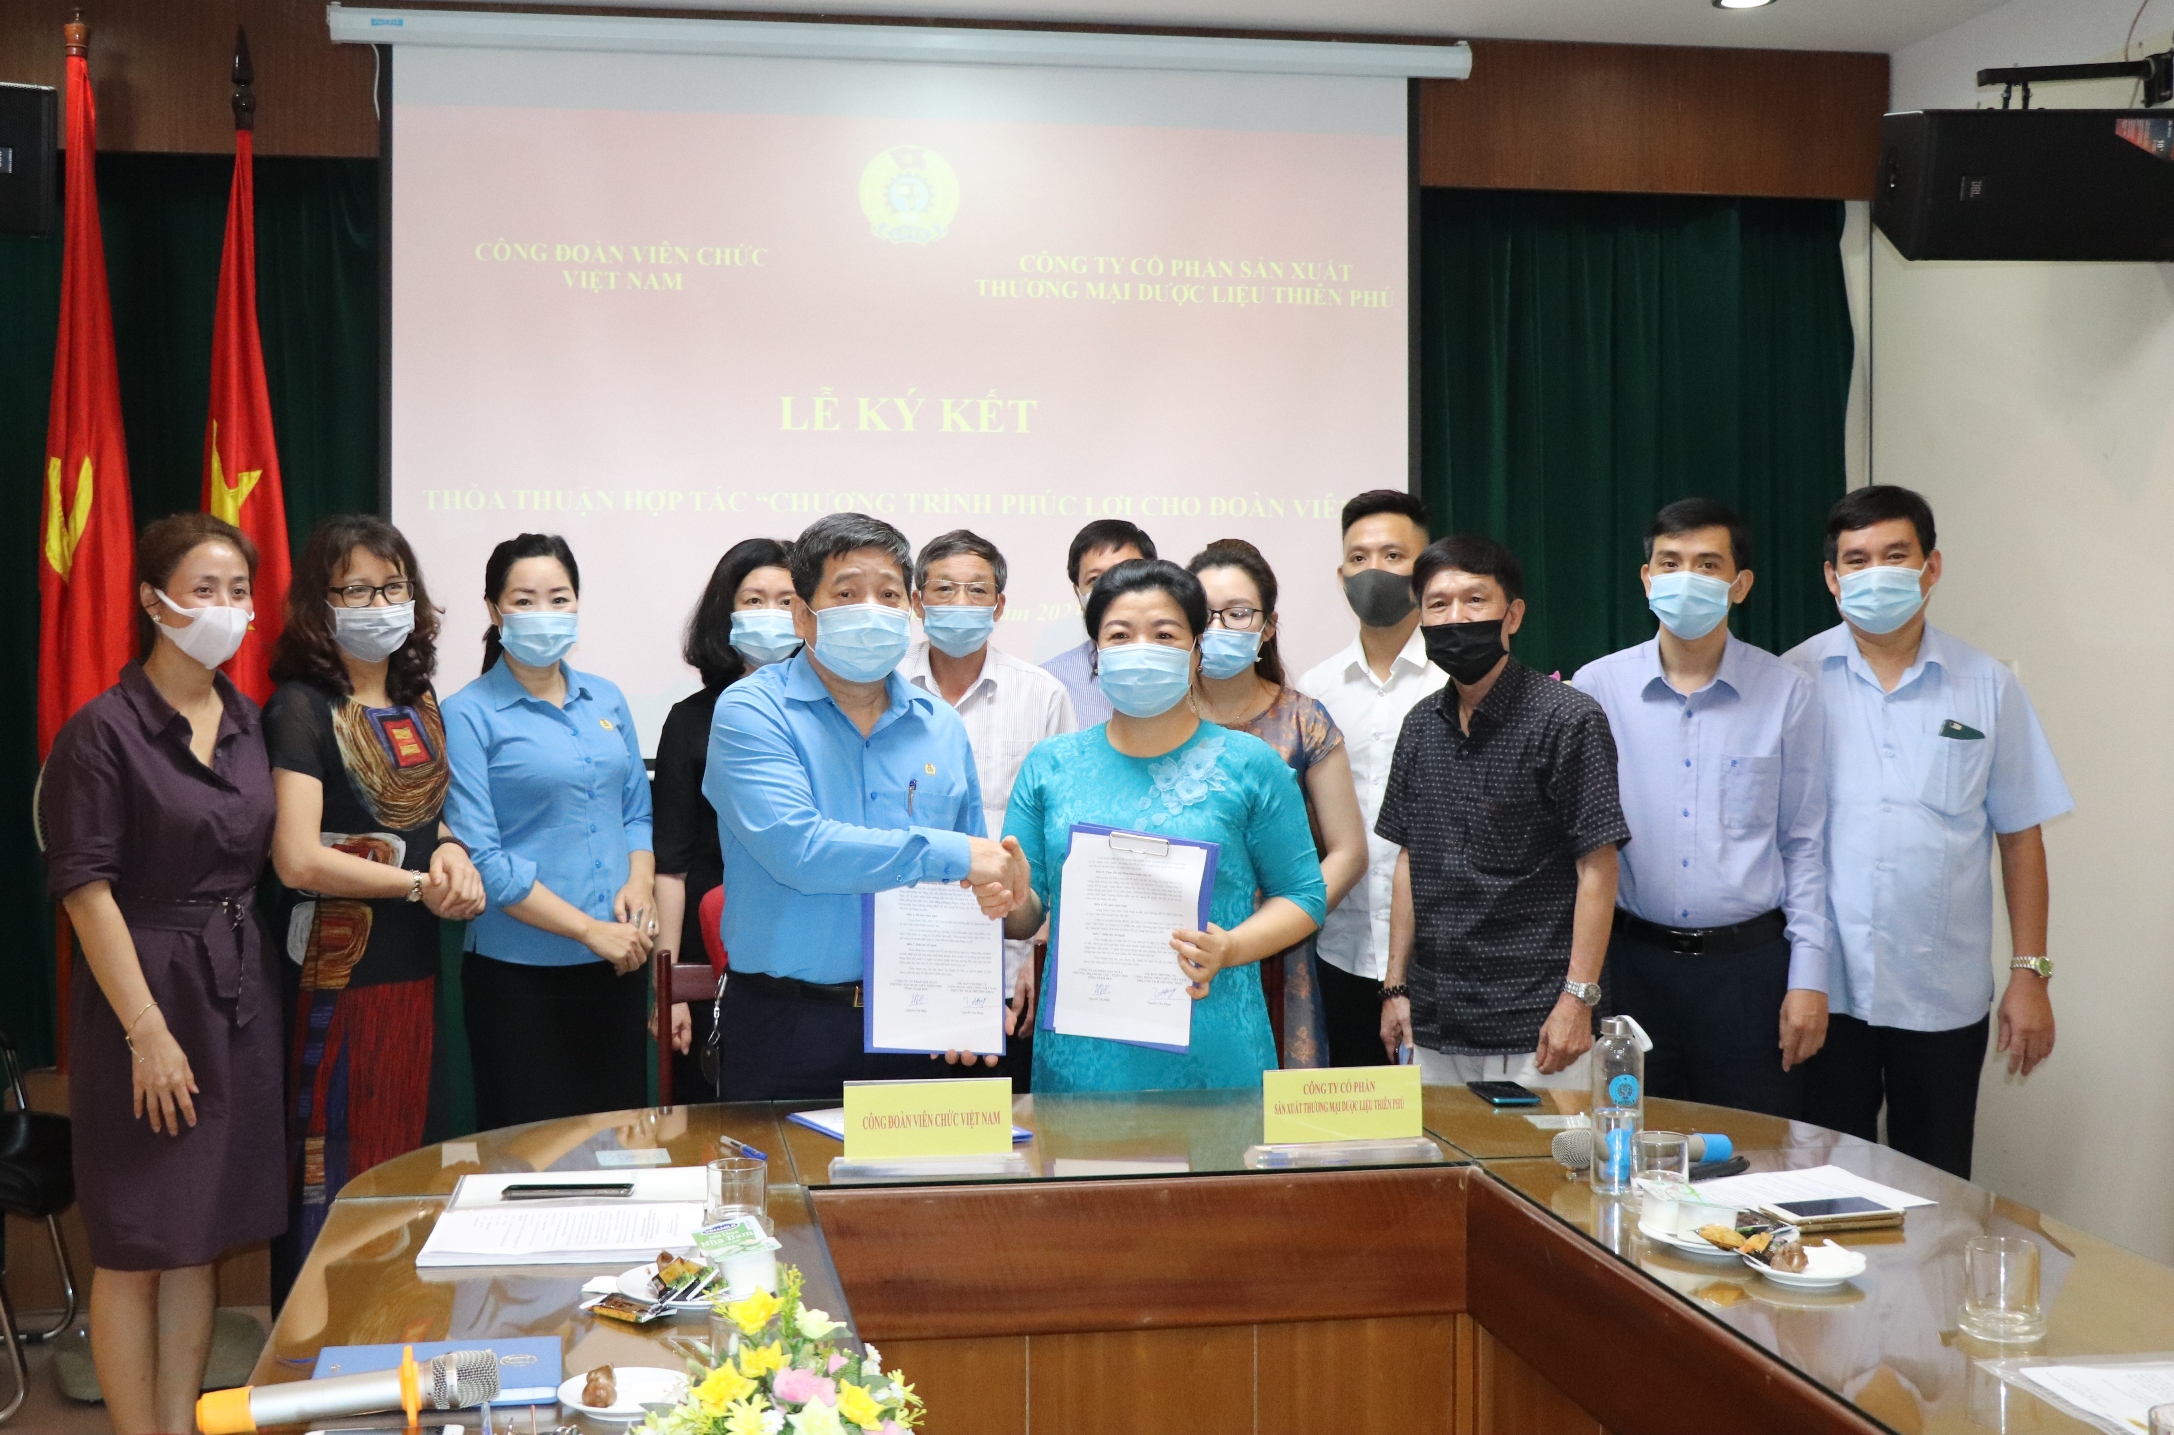 Công đoàn Viên chức Việt Nam ký kết thỏa thuận hợp tác với Công ty Cổ phần Sản xuất Thương mại Dược liệu Thiên Phú